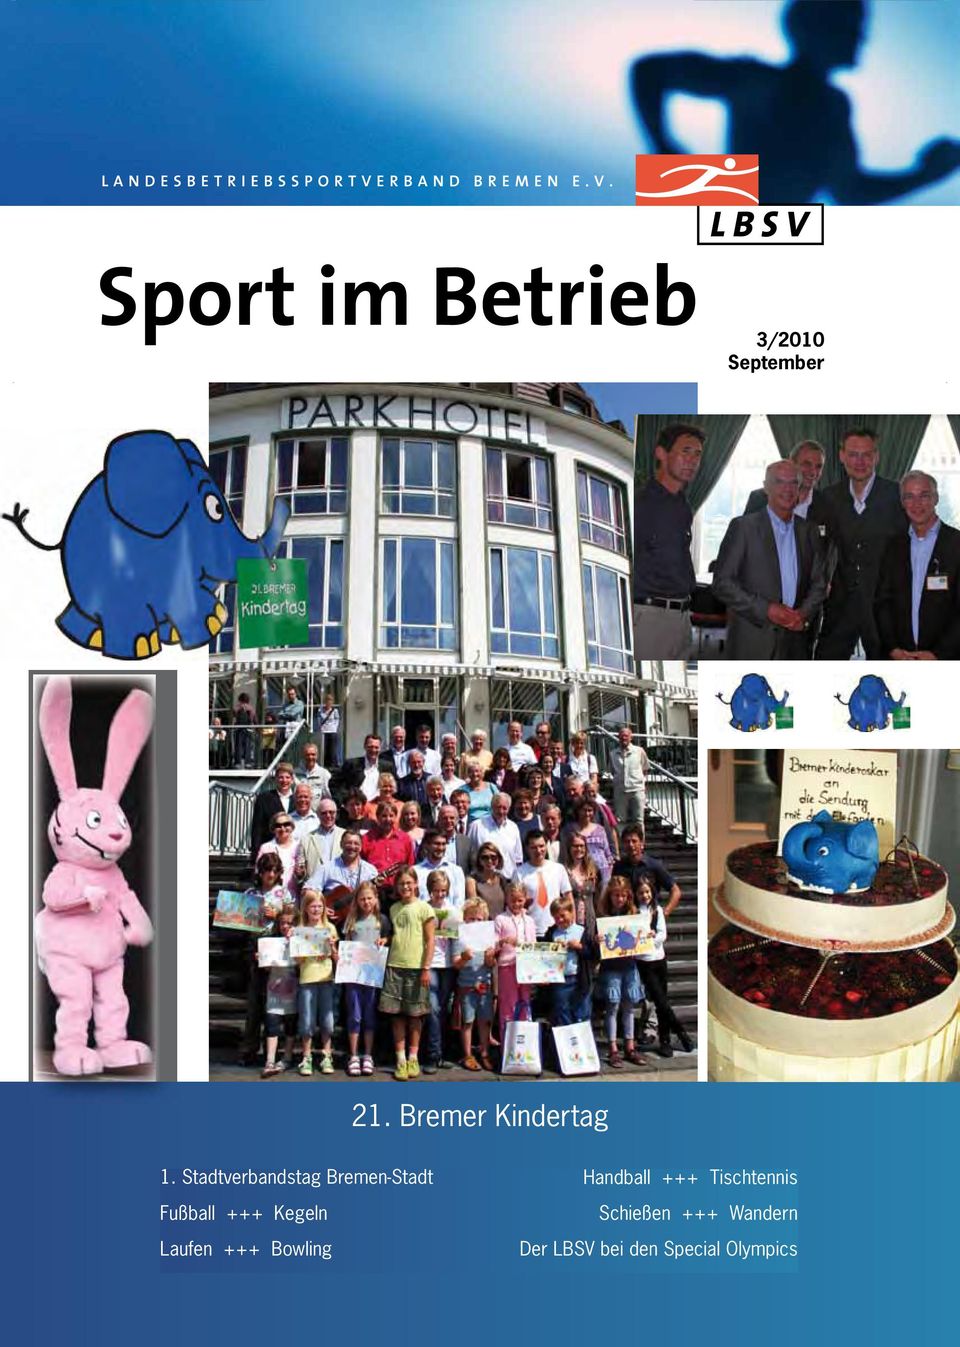 Stadtverbandstag Bremen-Stadt Fußball +++ Kegeln Laufen +++